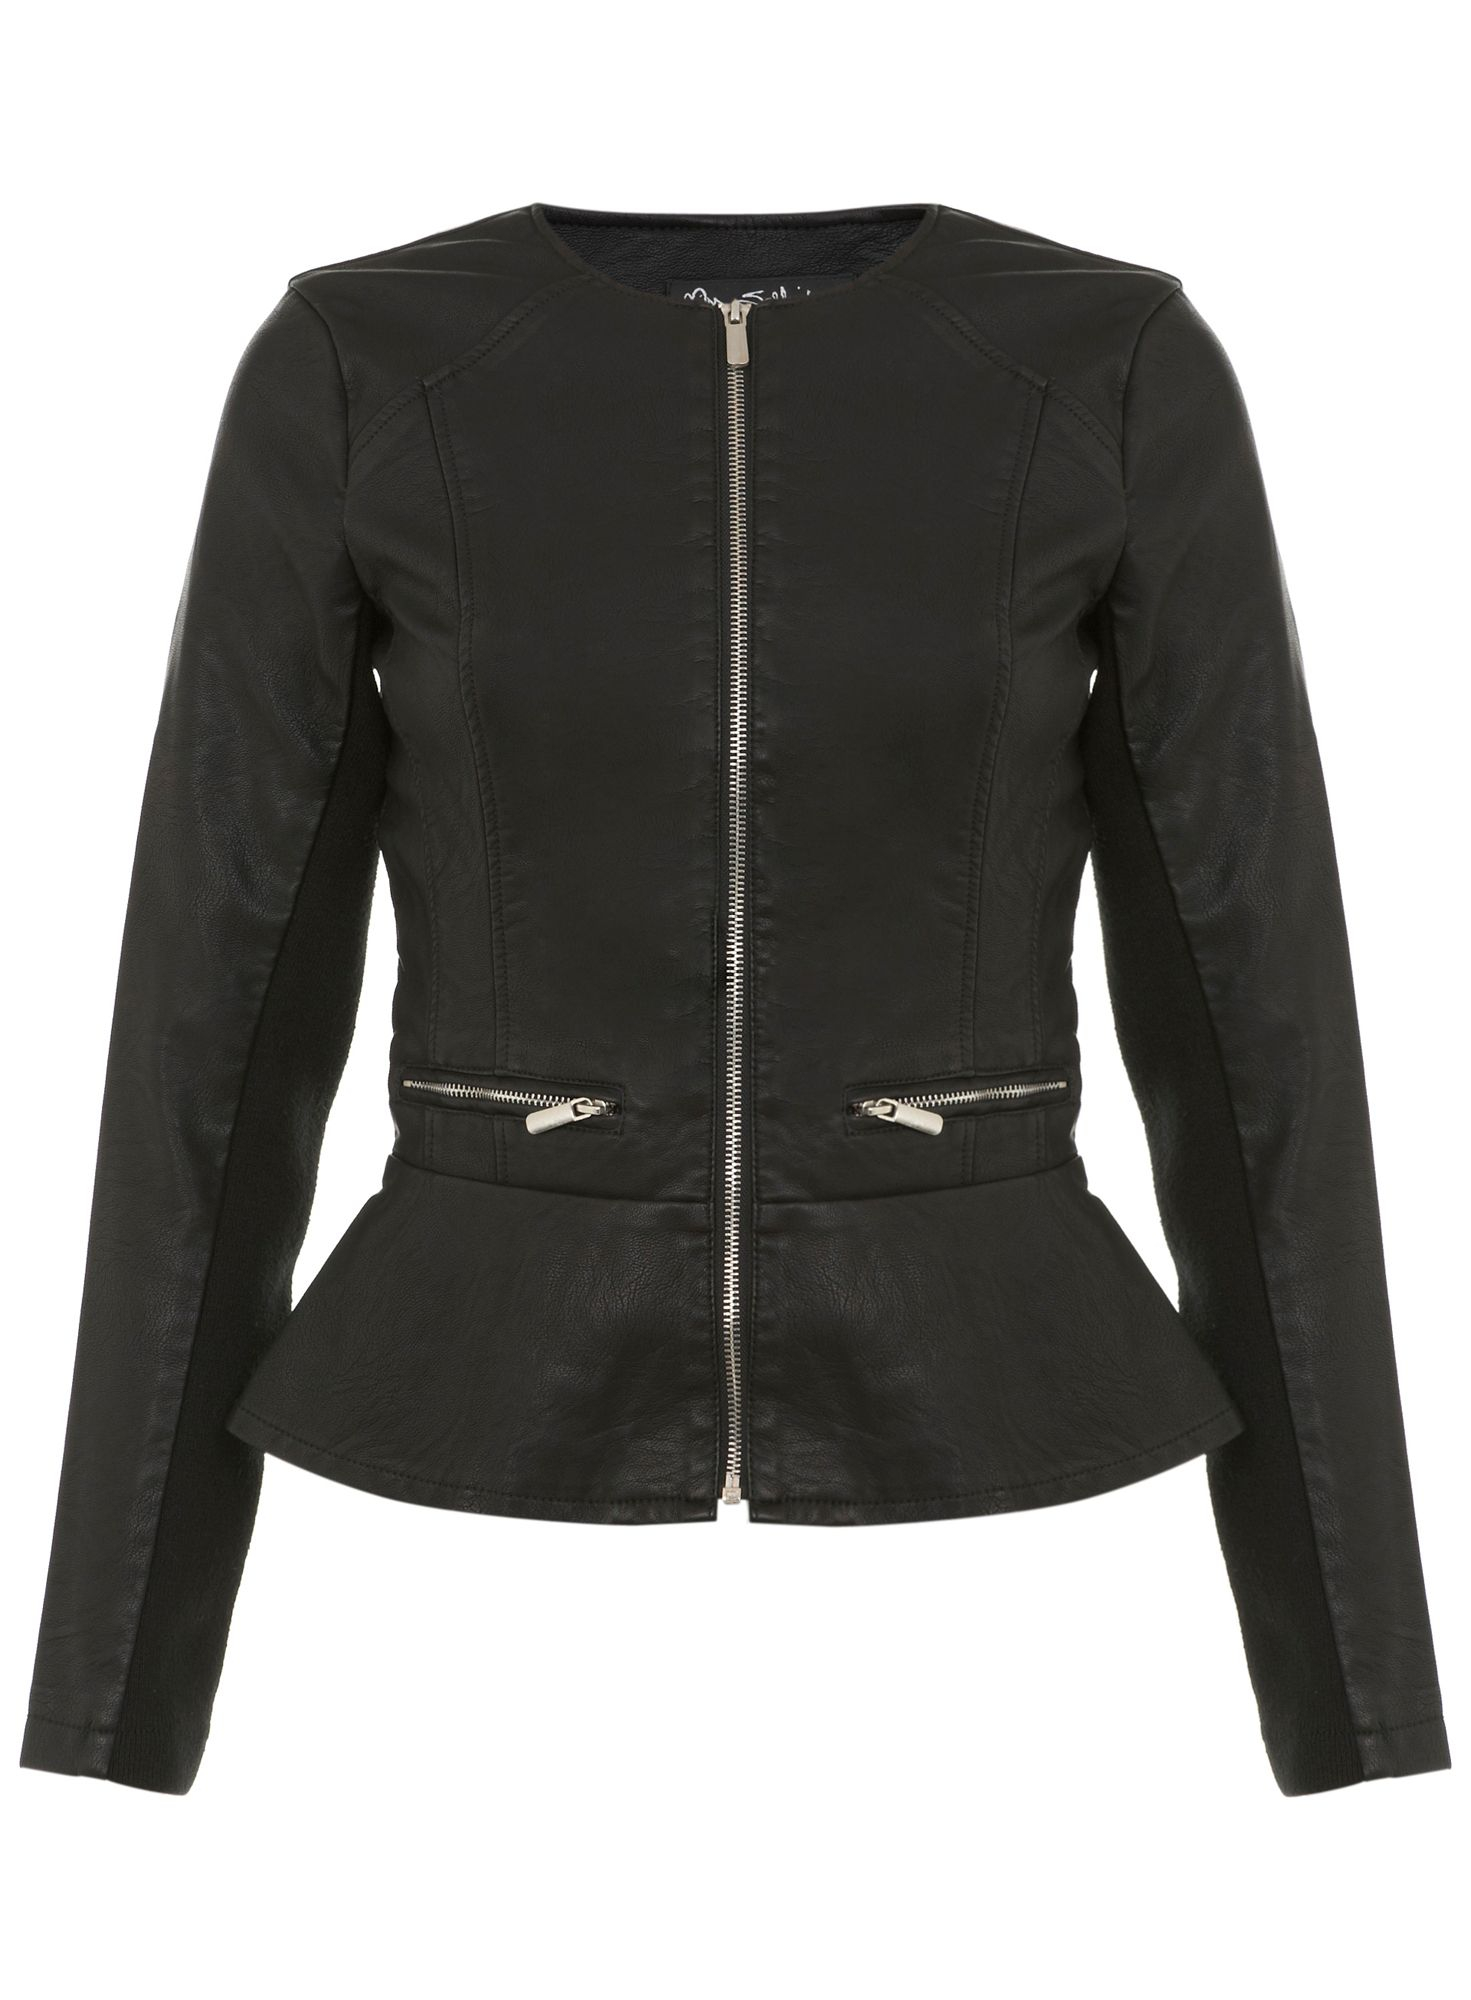 Miss selfridge Faux Leather Peplum Jacket in Black | Lyst